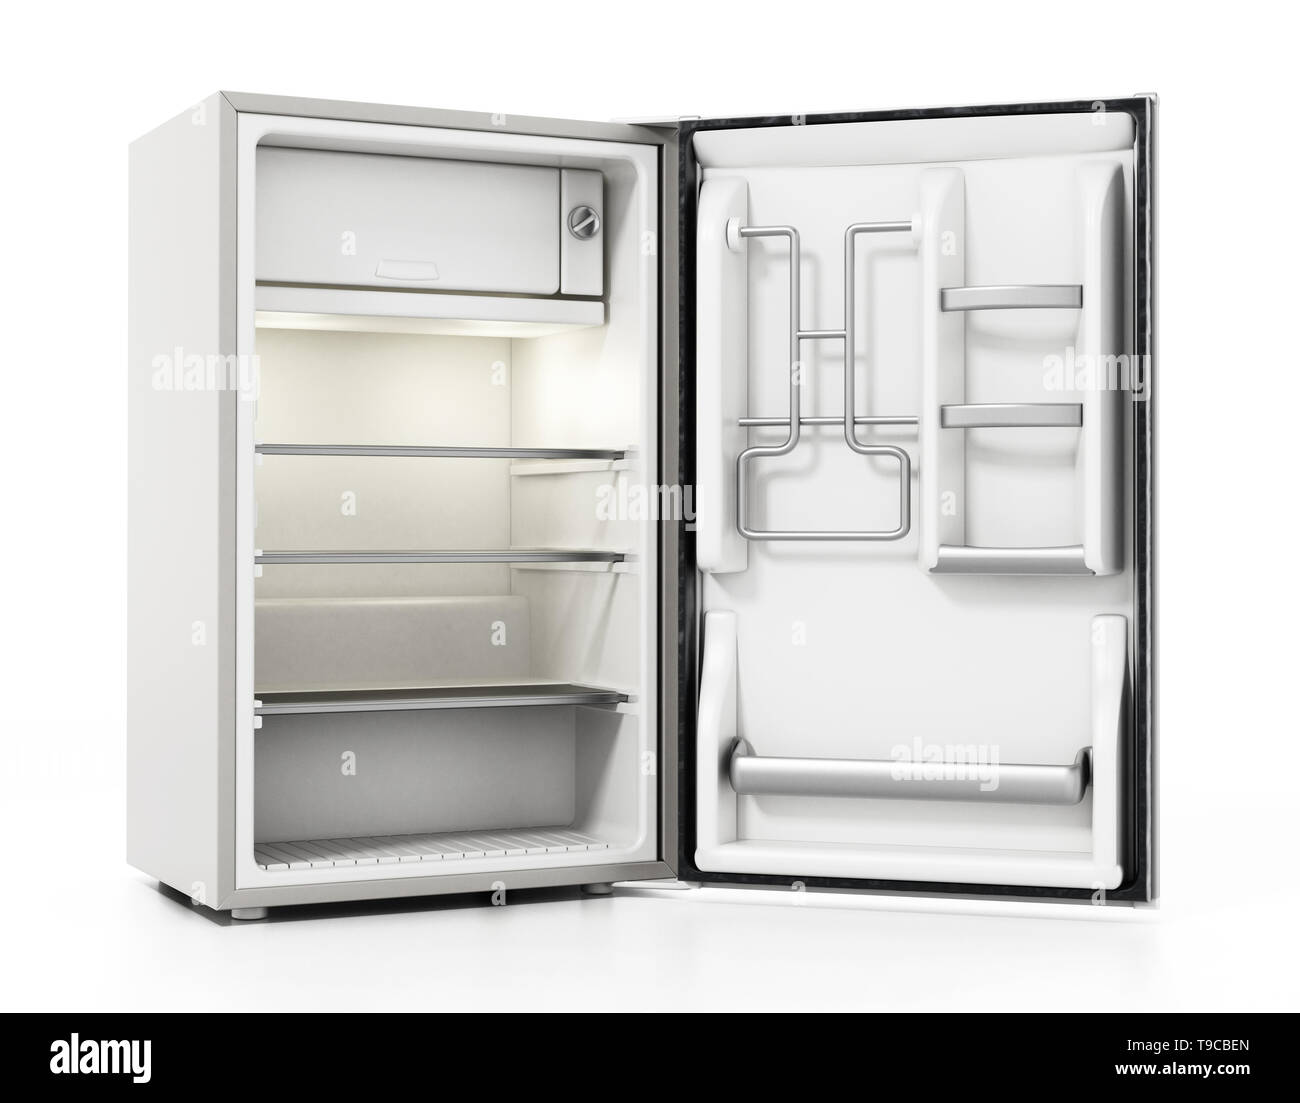 Hôtel de petite taille réfrigérateur isolé sur fond blanc. 3D illustration. Banque D'Images